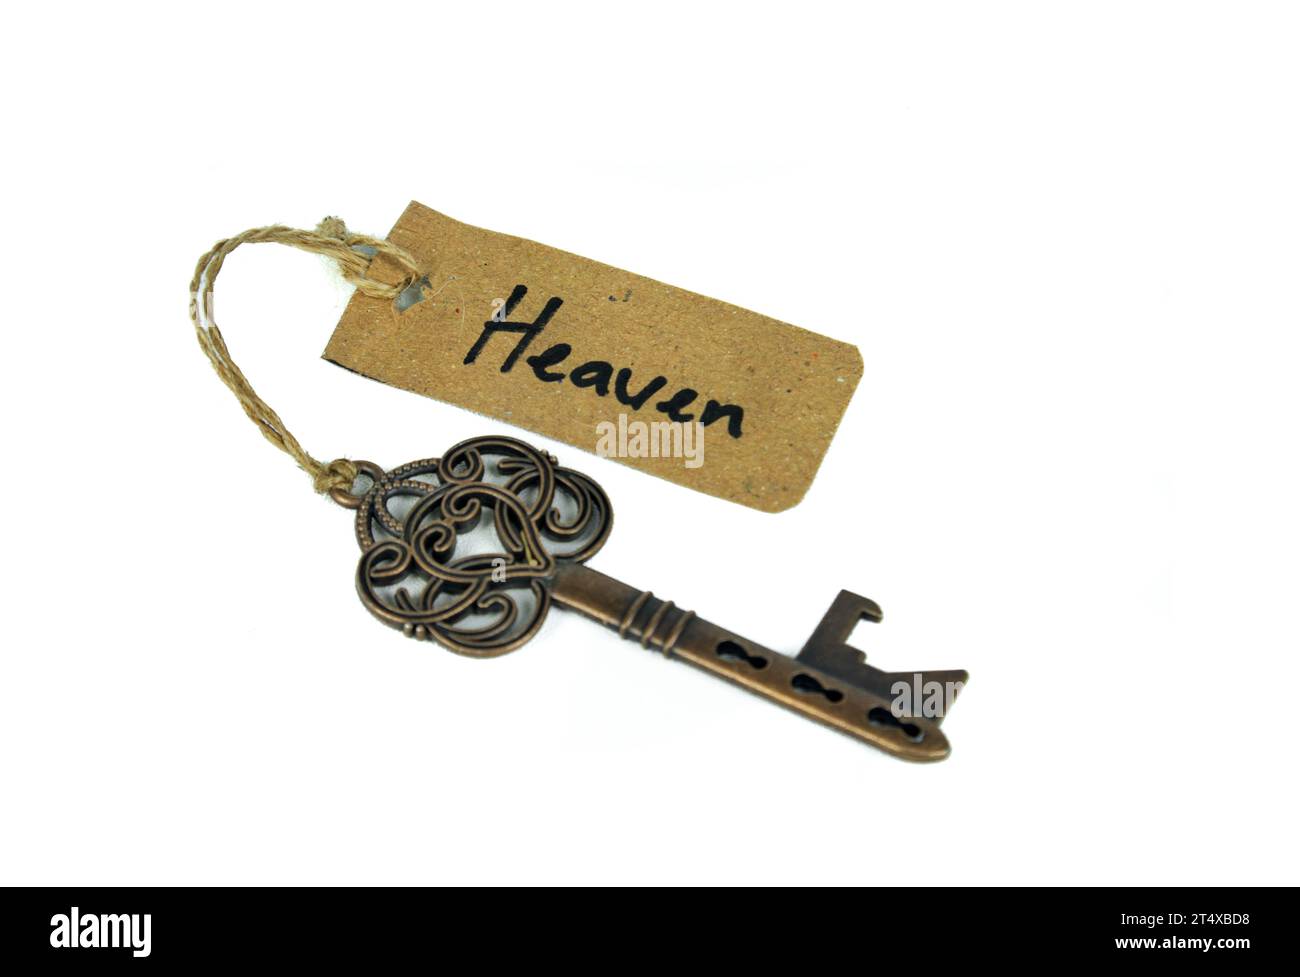 Vieille clé antique avec étiquette Heaven sur fond blanc Banque D'Images